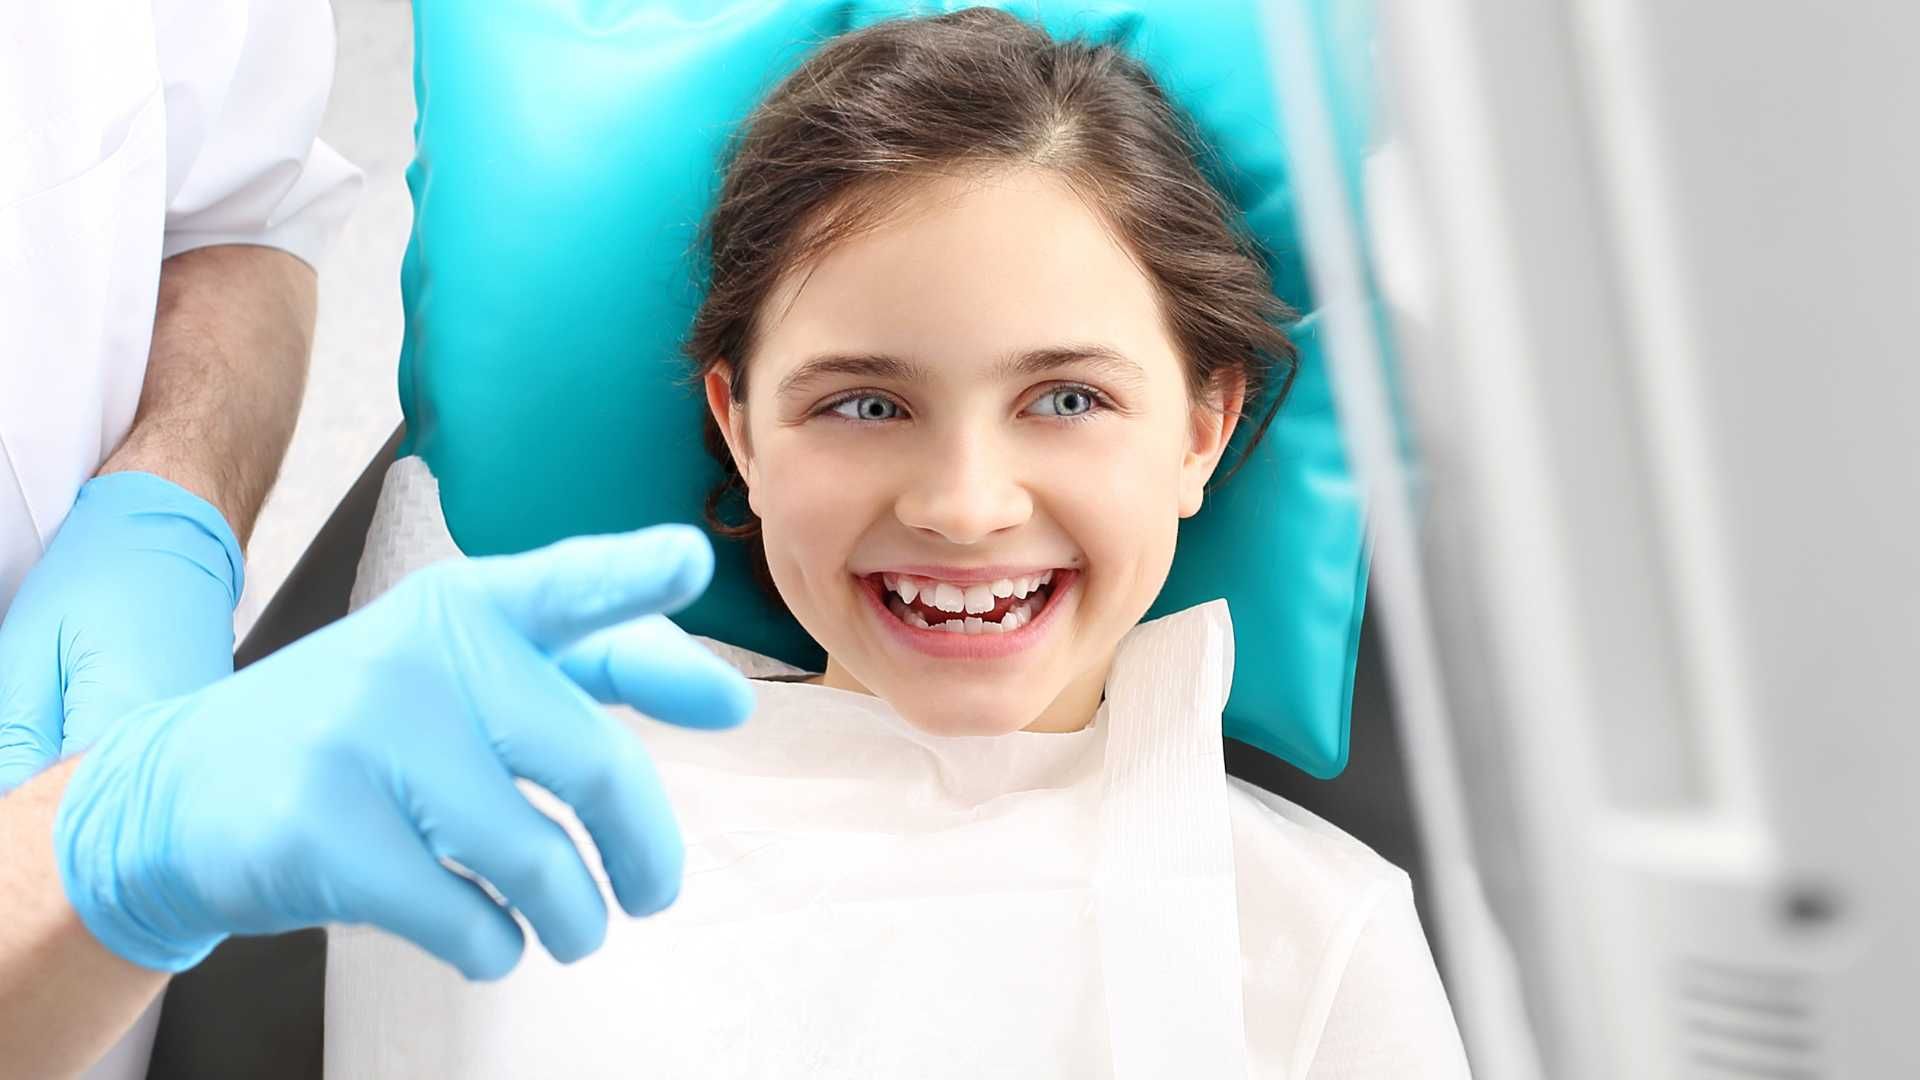 پرکردن دندان شیری یک سطحی با کامپوزیت آلمانی